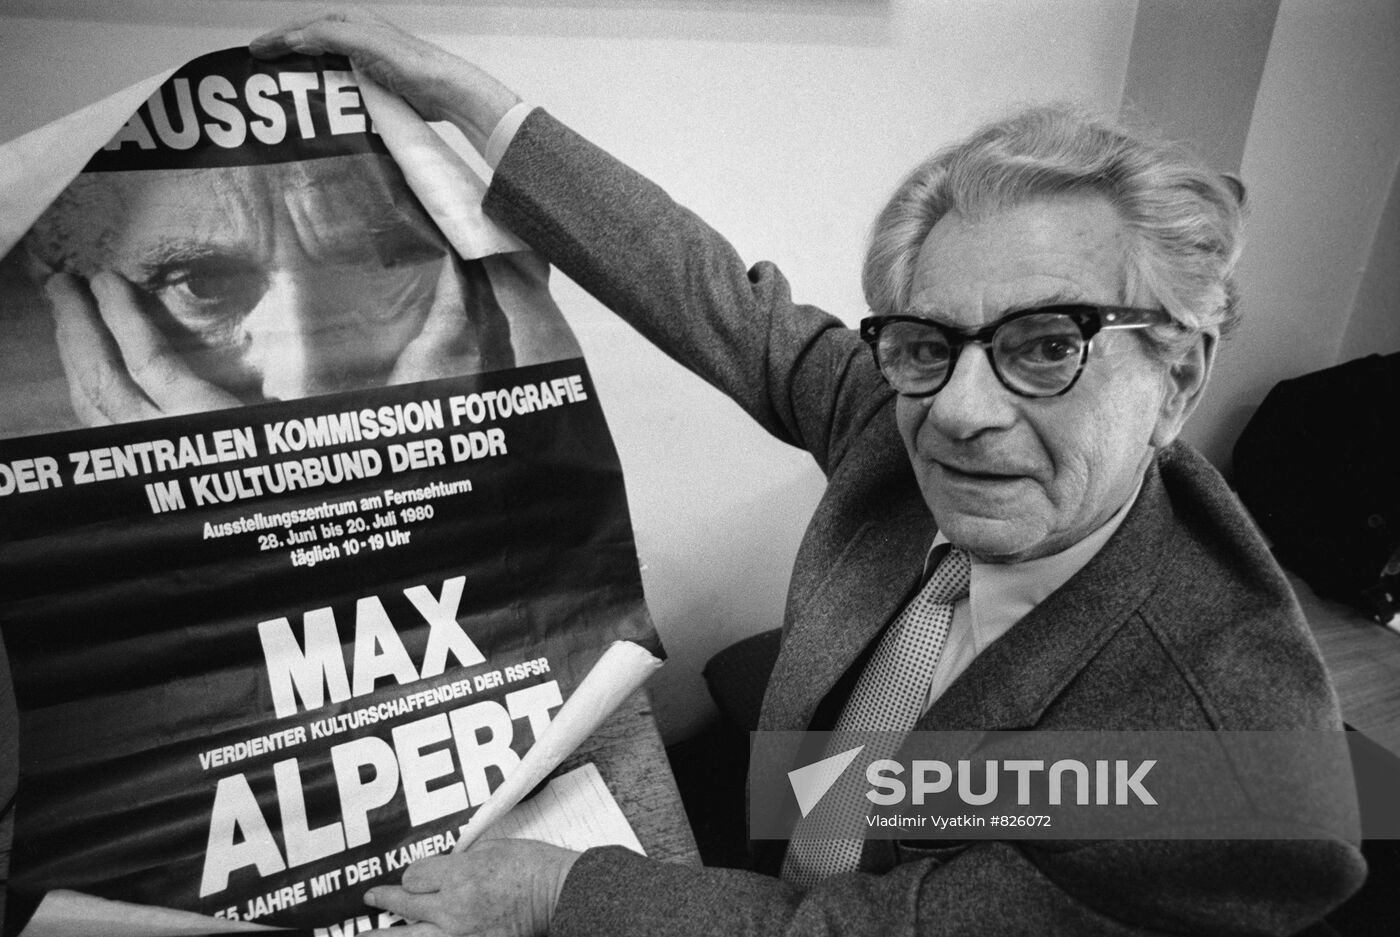 Soviet photographer and reporter Max Vladimirovich Alpert